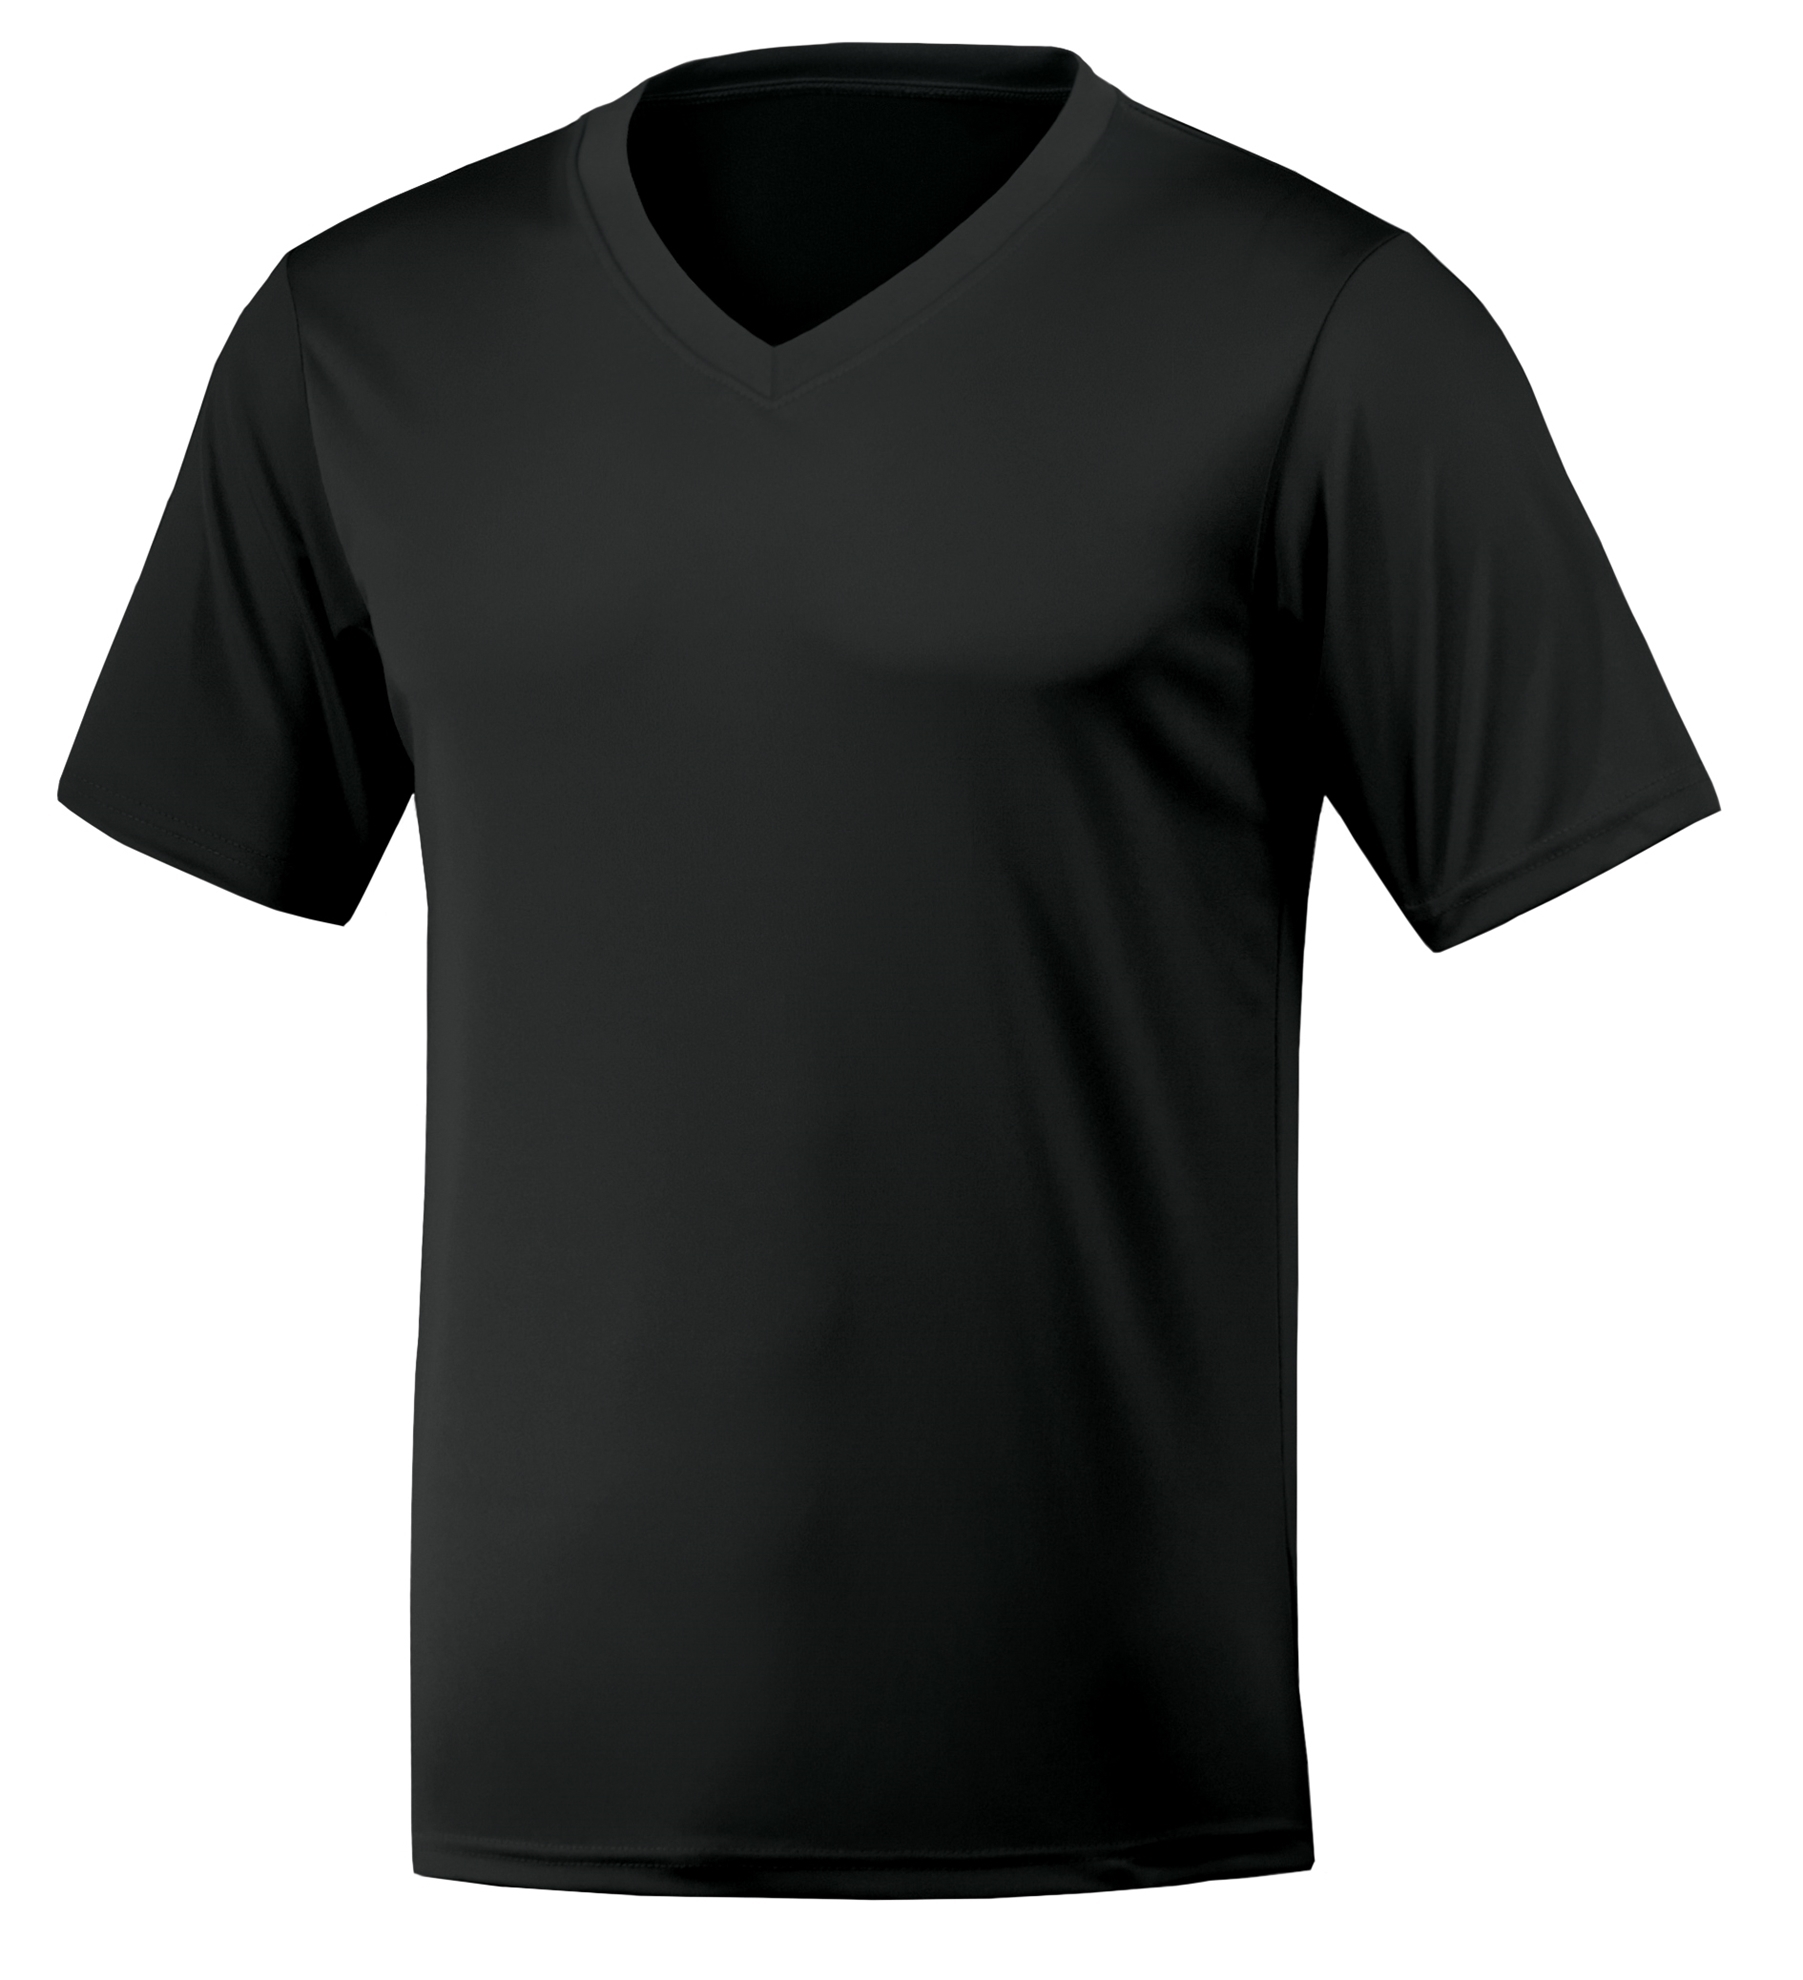 BAW Athletic Wear XT74 / XT74H - Men's Xtreme-Tek V-Neck Shirt